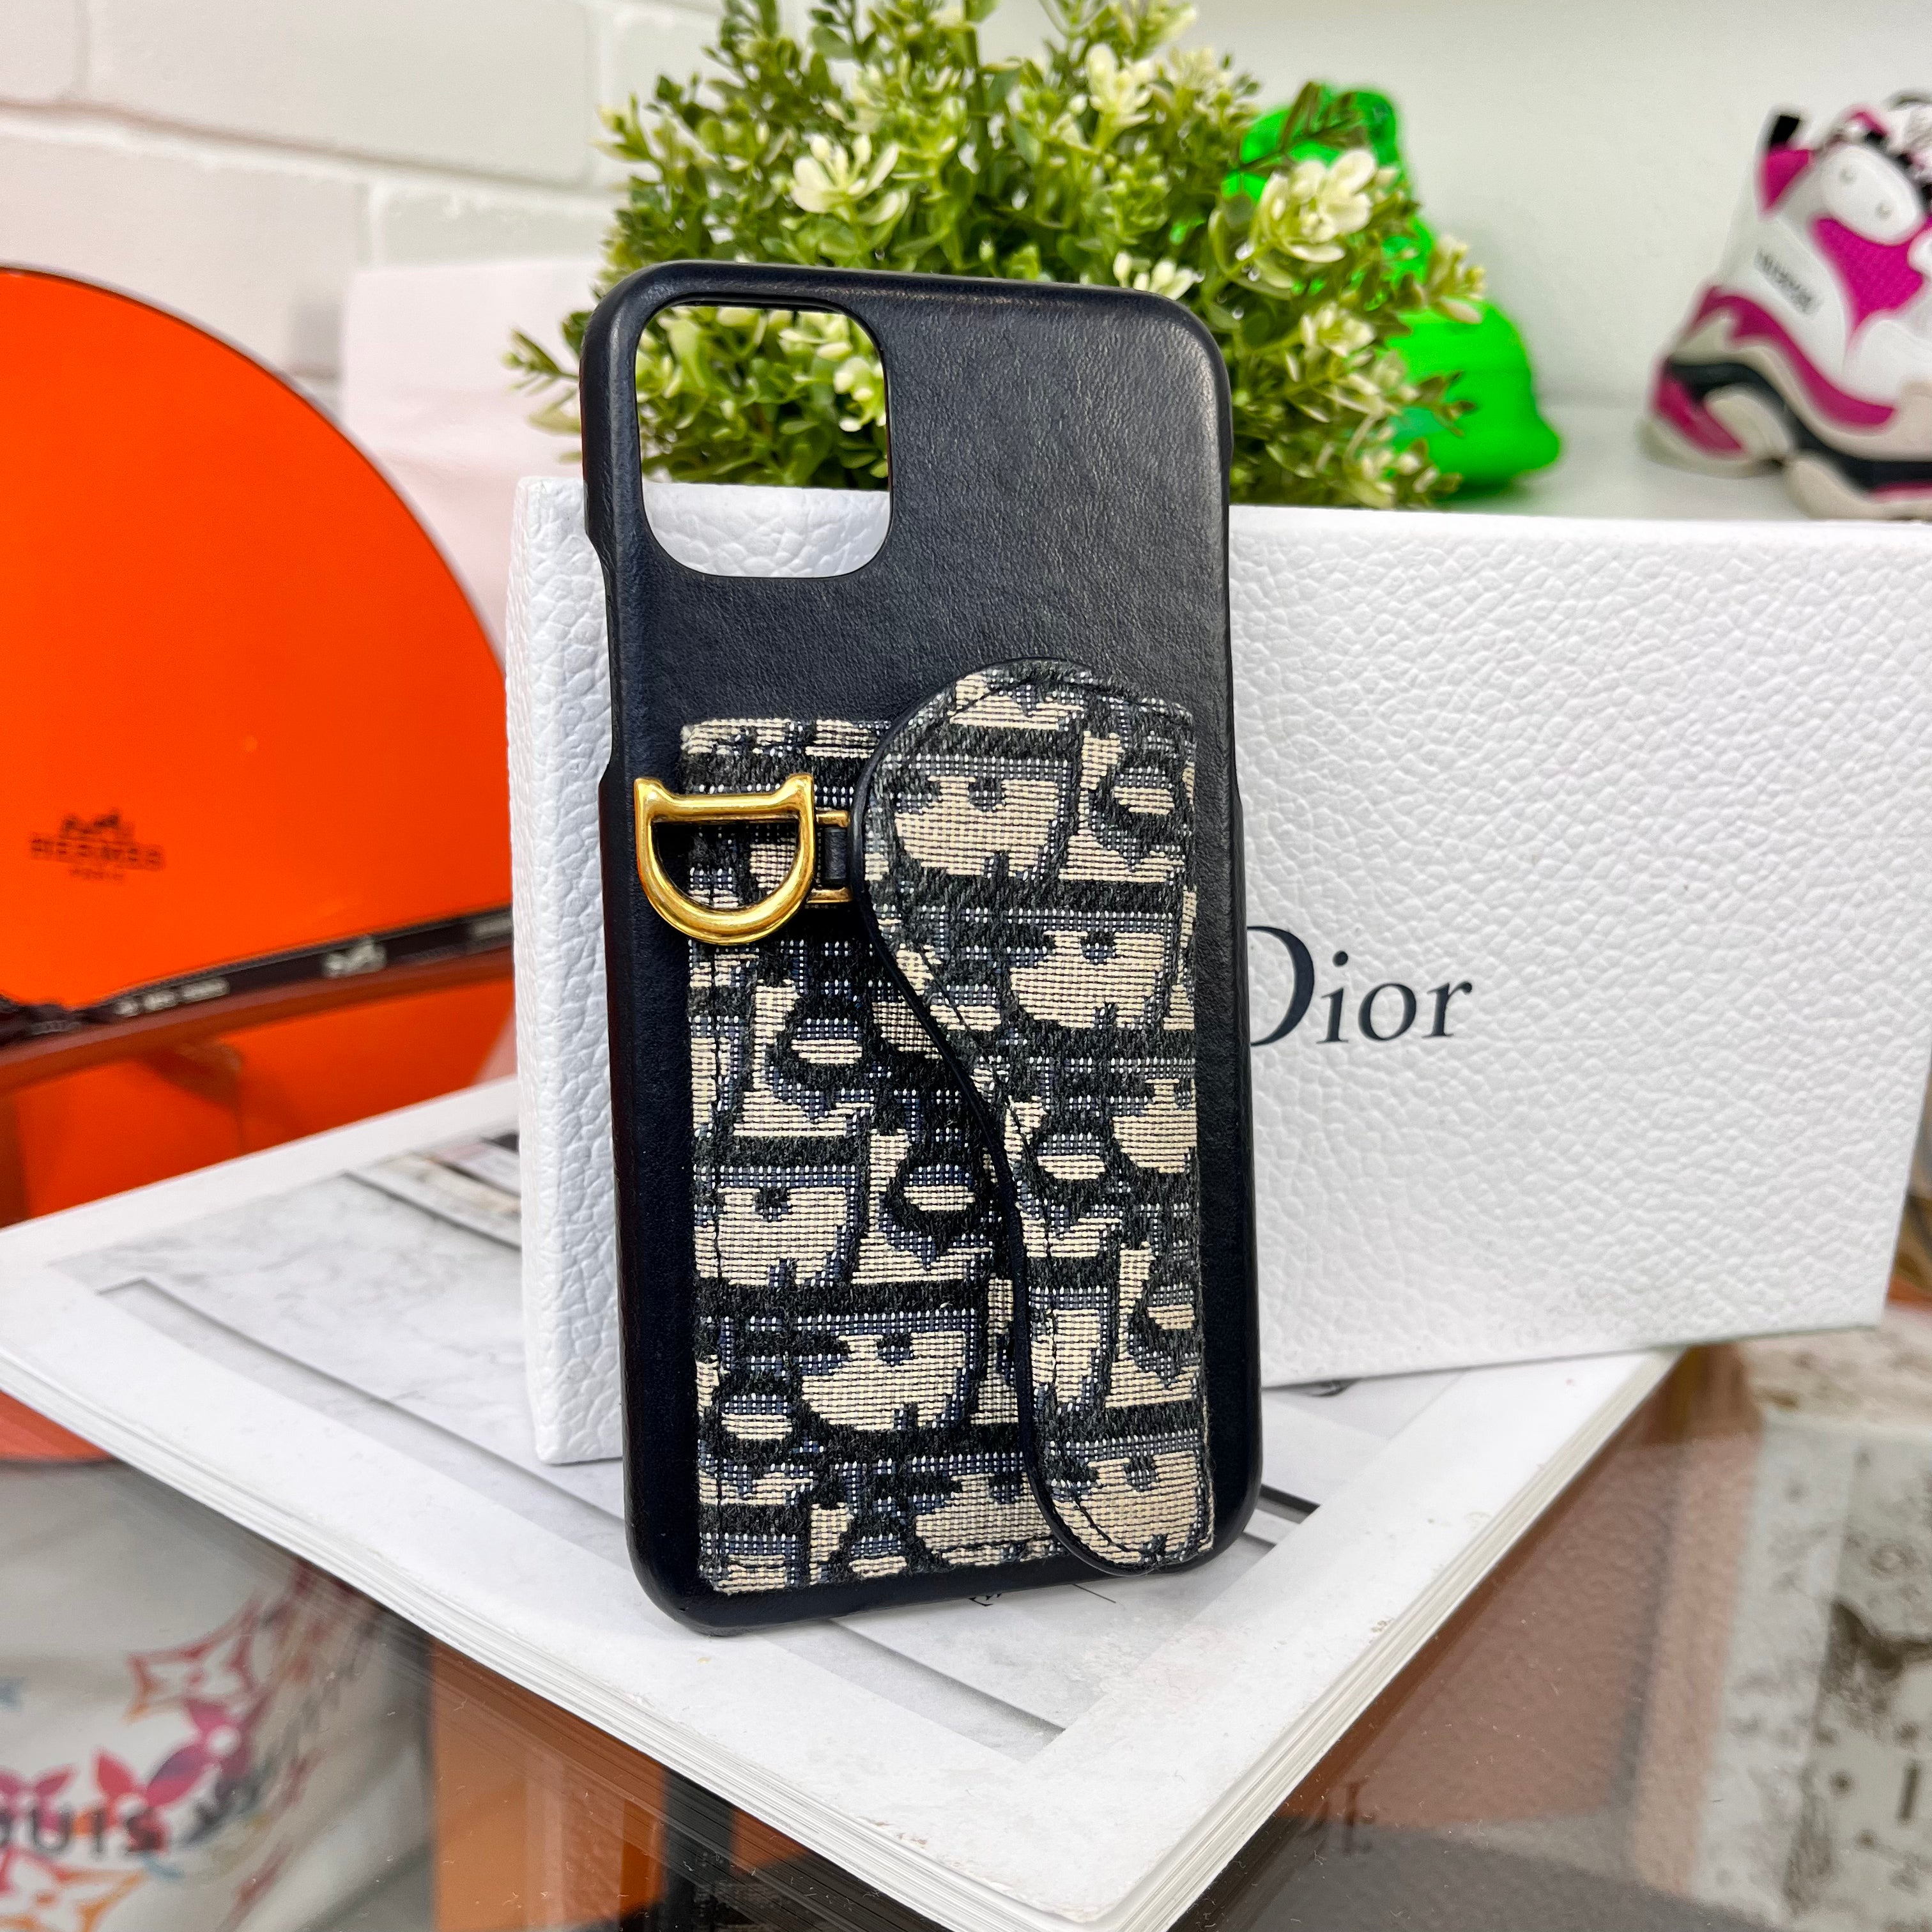 Dior iPhone case - Addtocart.io